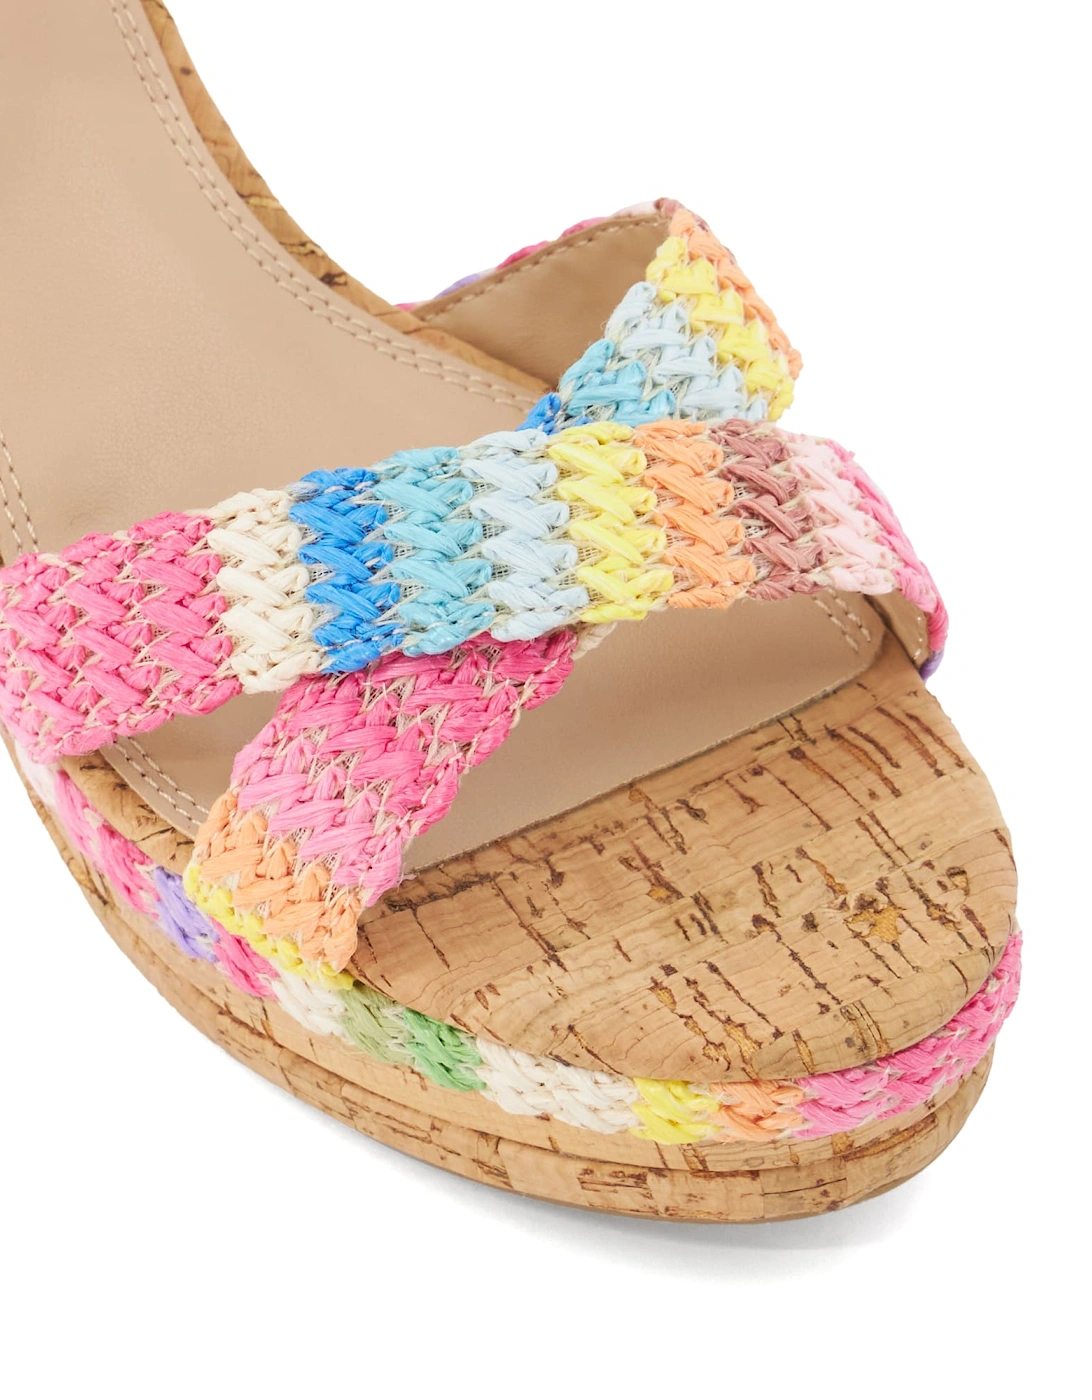 Ladies Kelisa - Braided-Cross-Strap Cork-Wedge Sandals